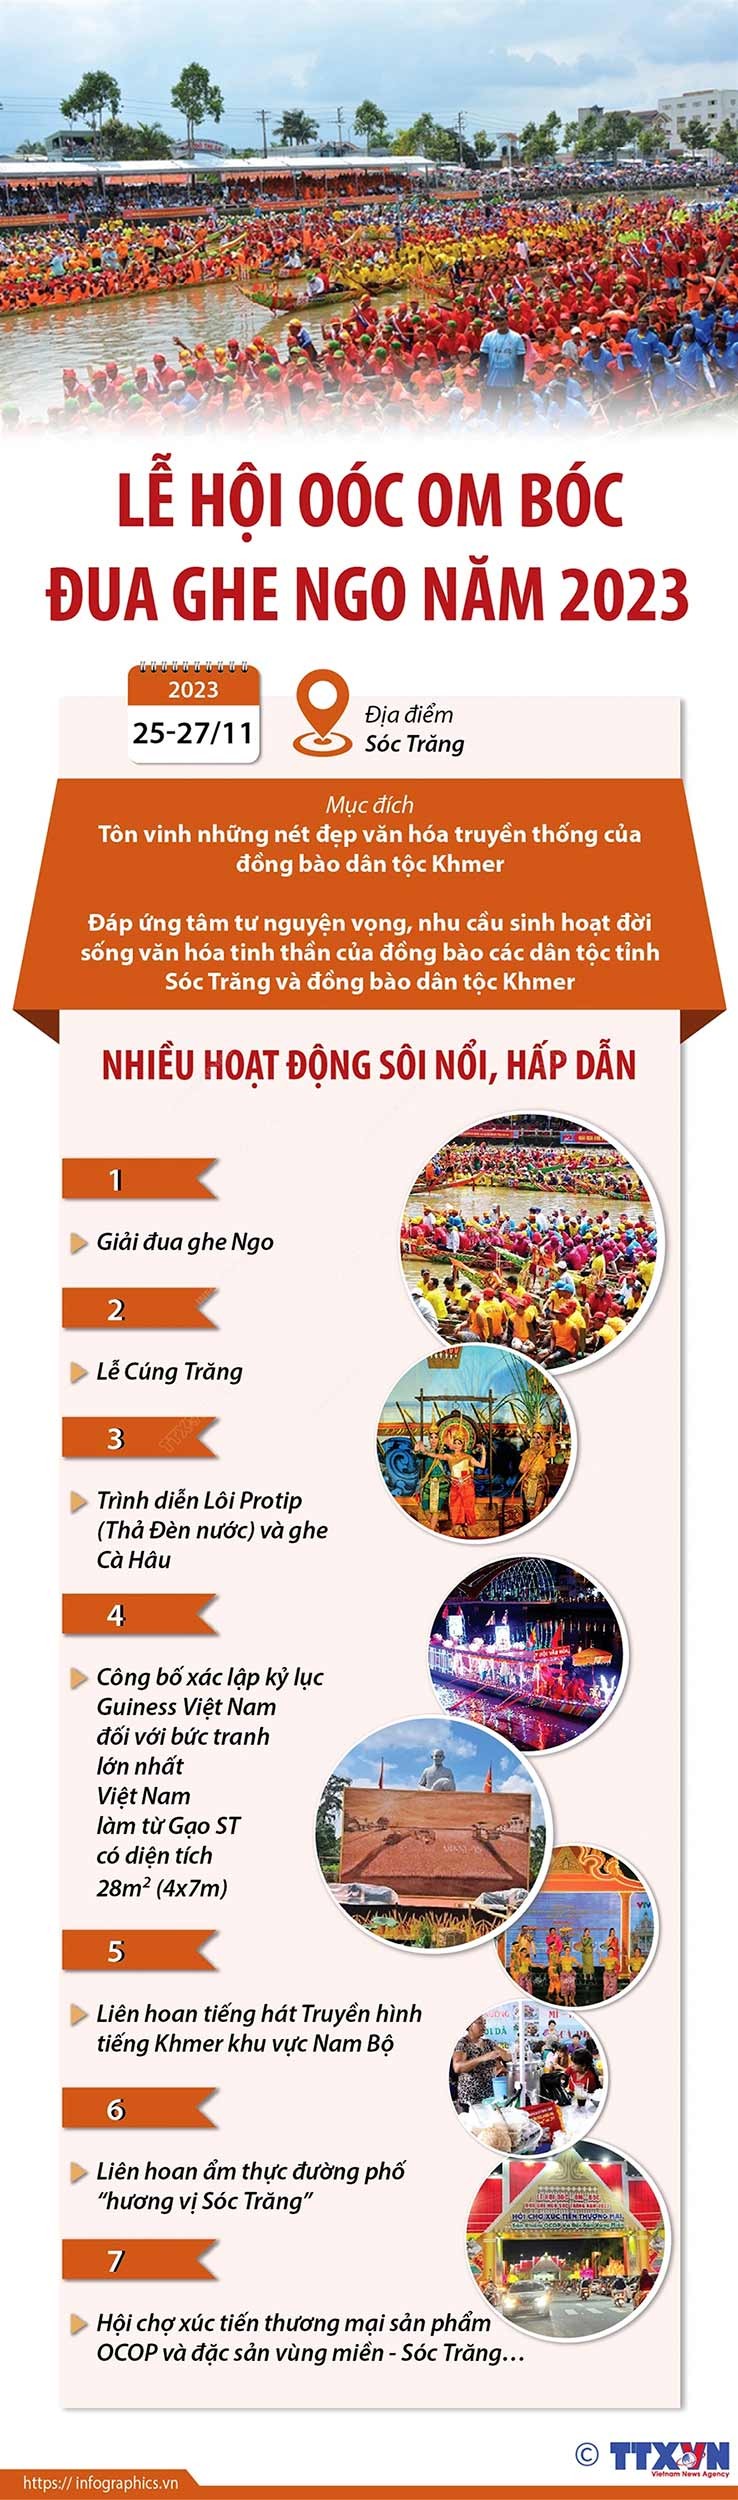 Lễ hội Ok Om Bok - Đua ghe ngo năm 2023